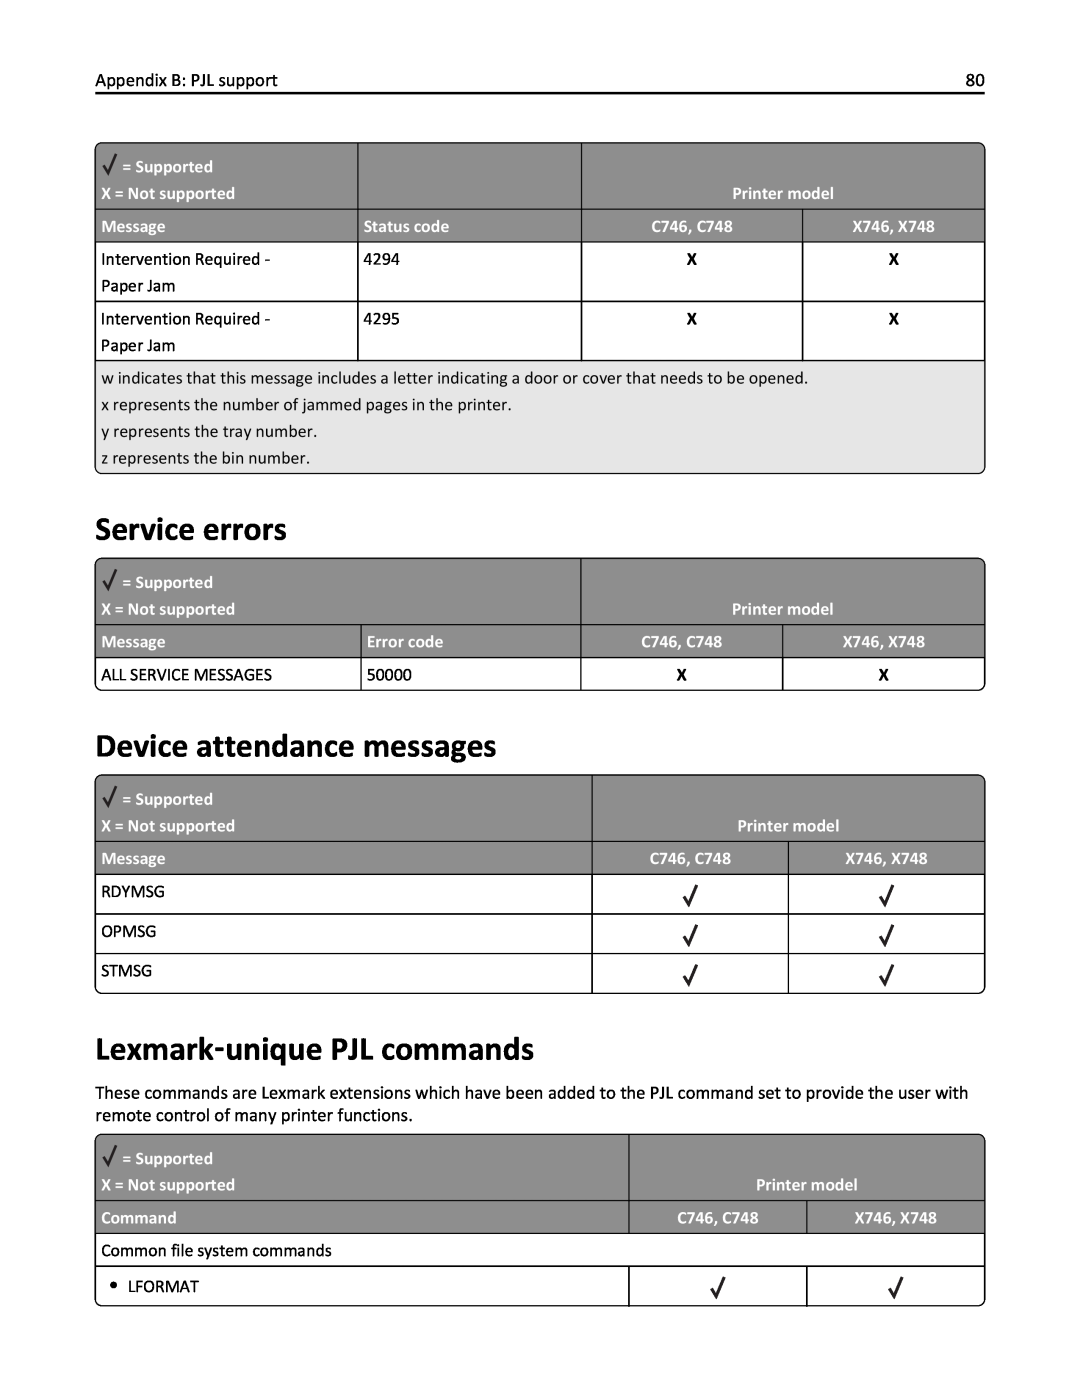 Lexmark 746dn, 748dte Service errors, Device attendance messages, Lexmark‑unique PJL commands, Appendix B: PJL support 